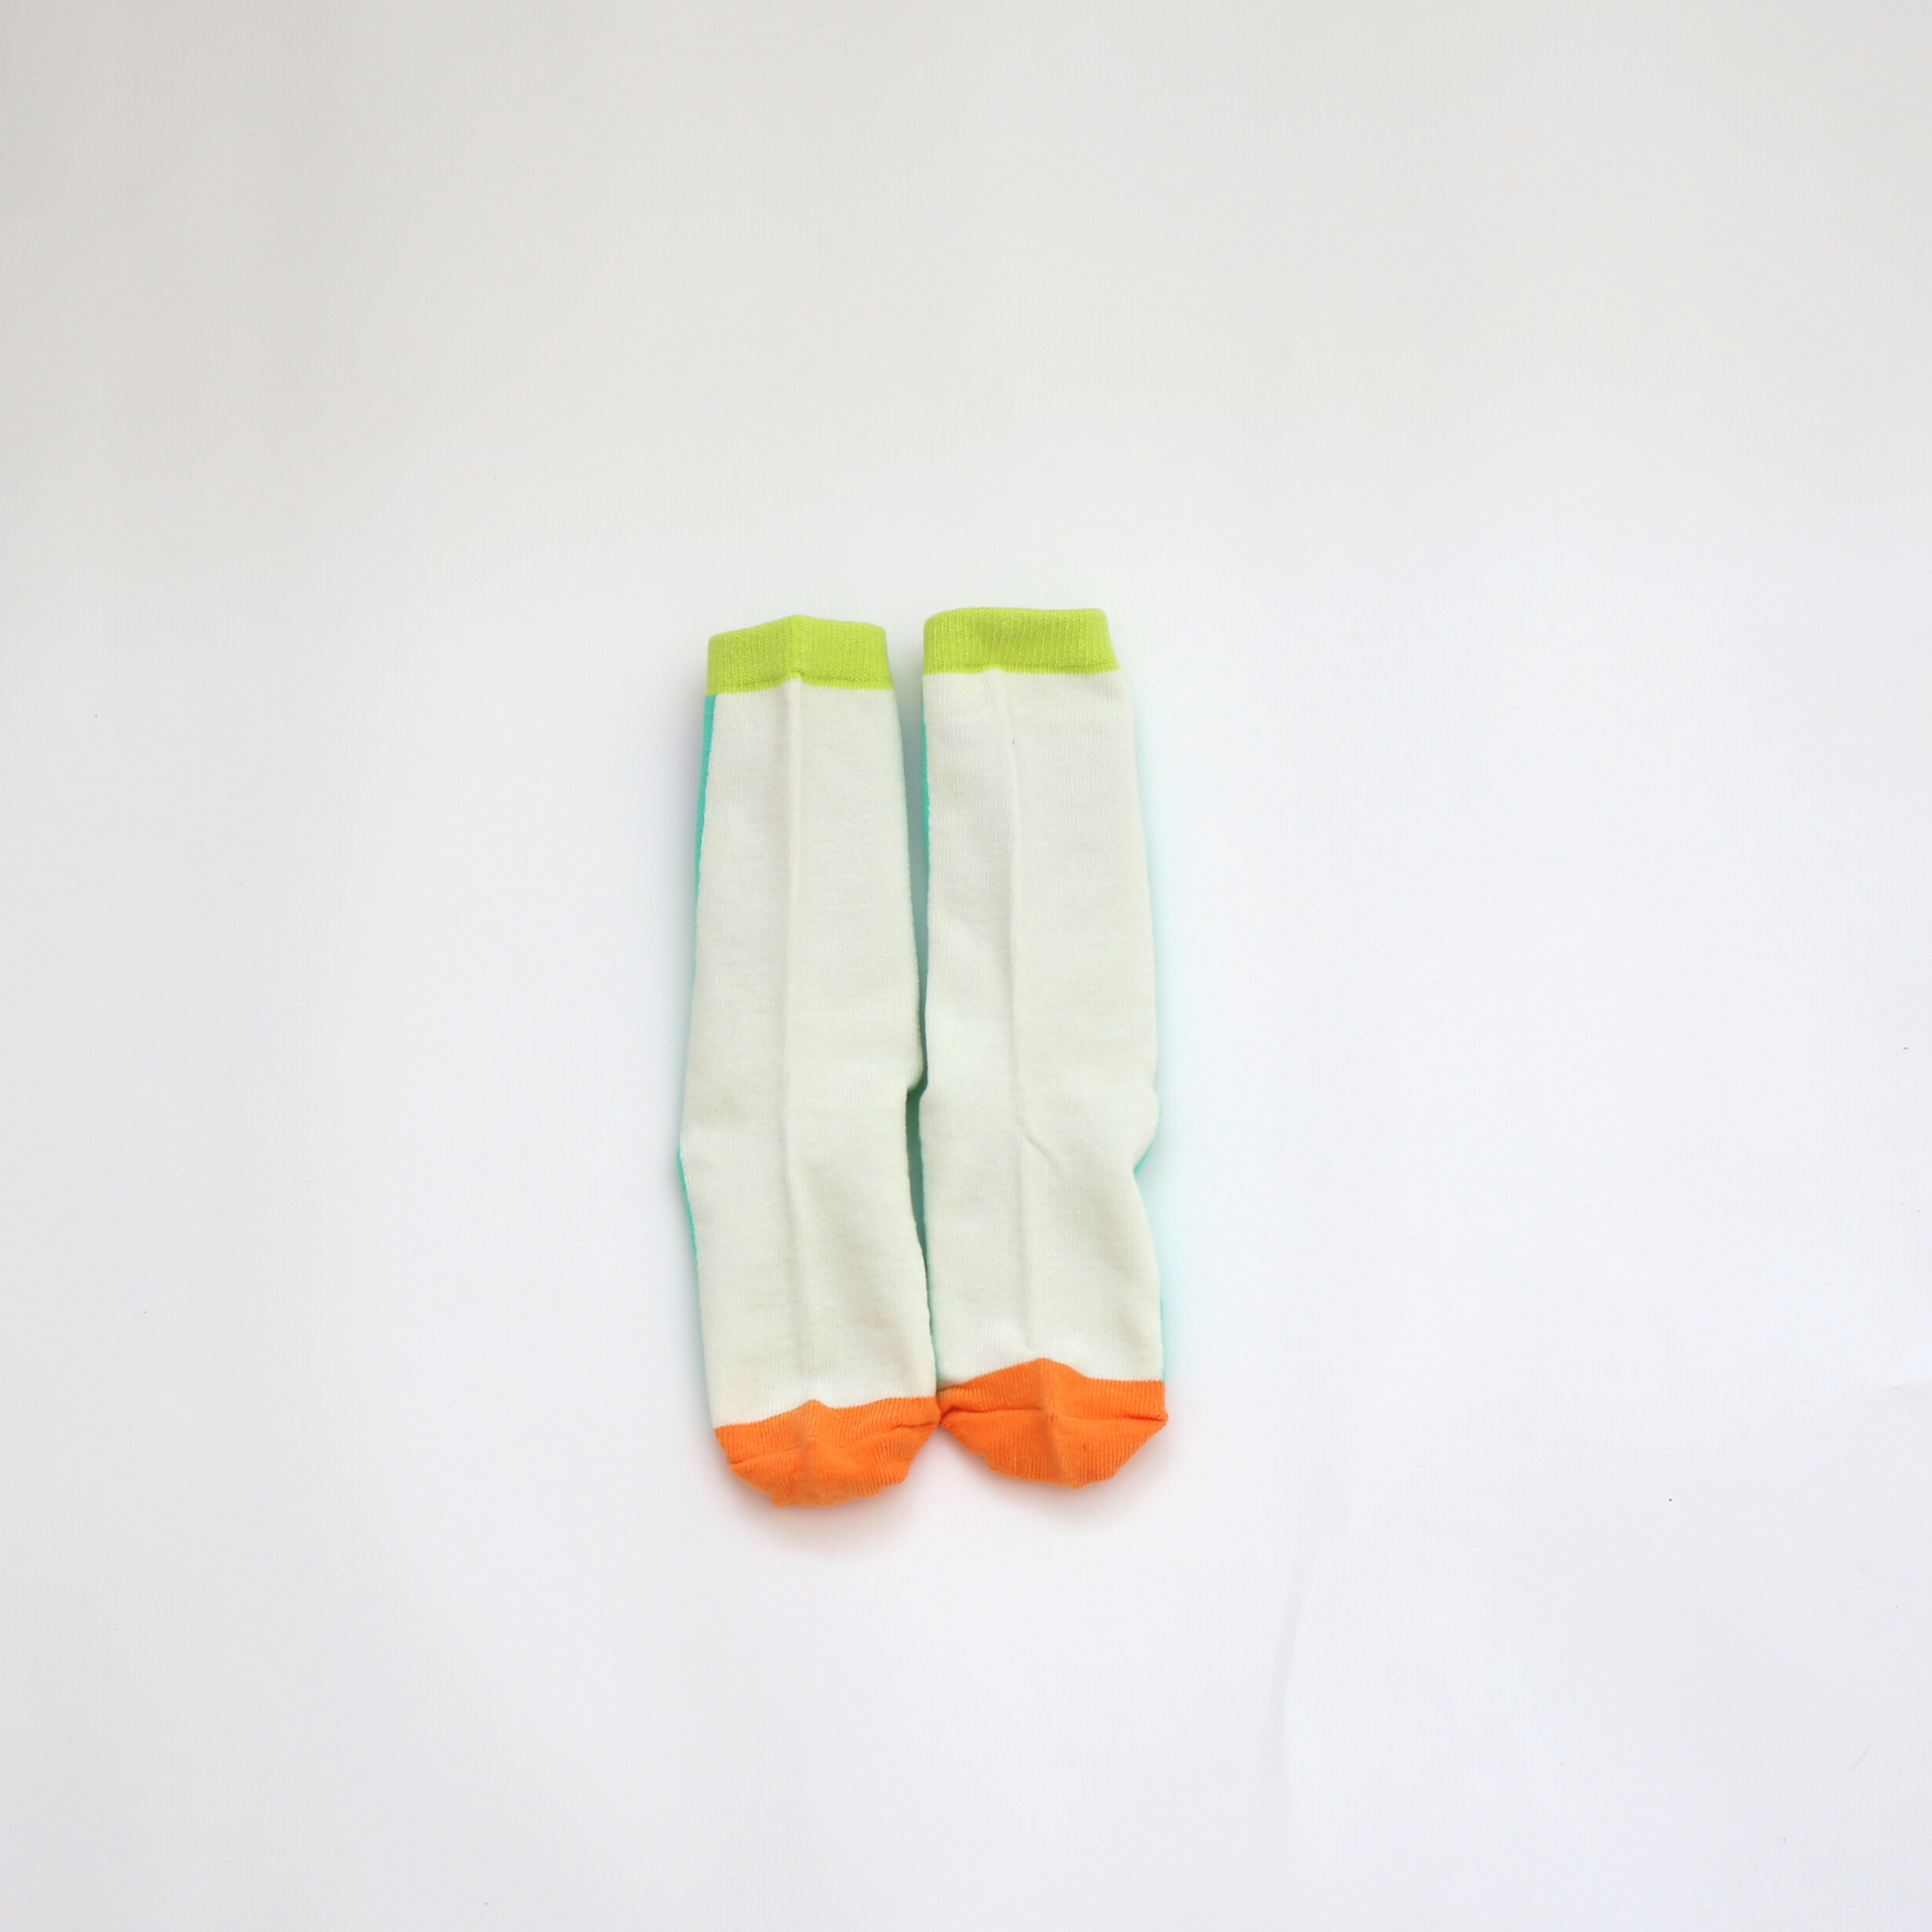 パターン ソックス グリーン / pattern socks green (こども服) - kids clothes shop GUZUGUZU